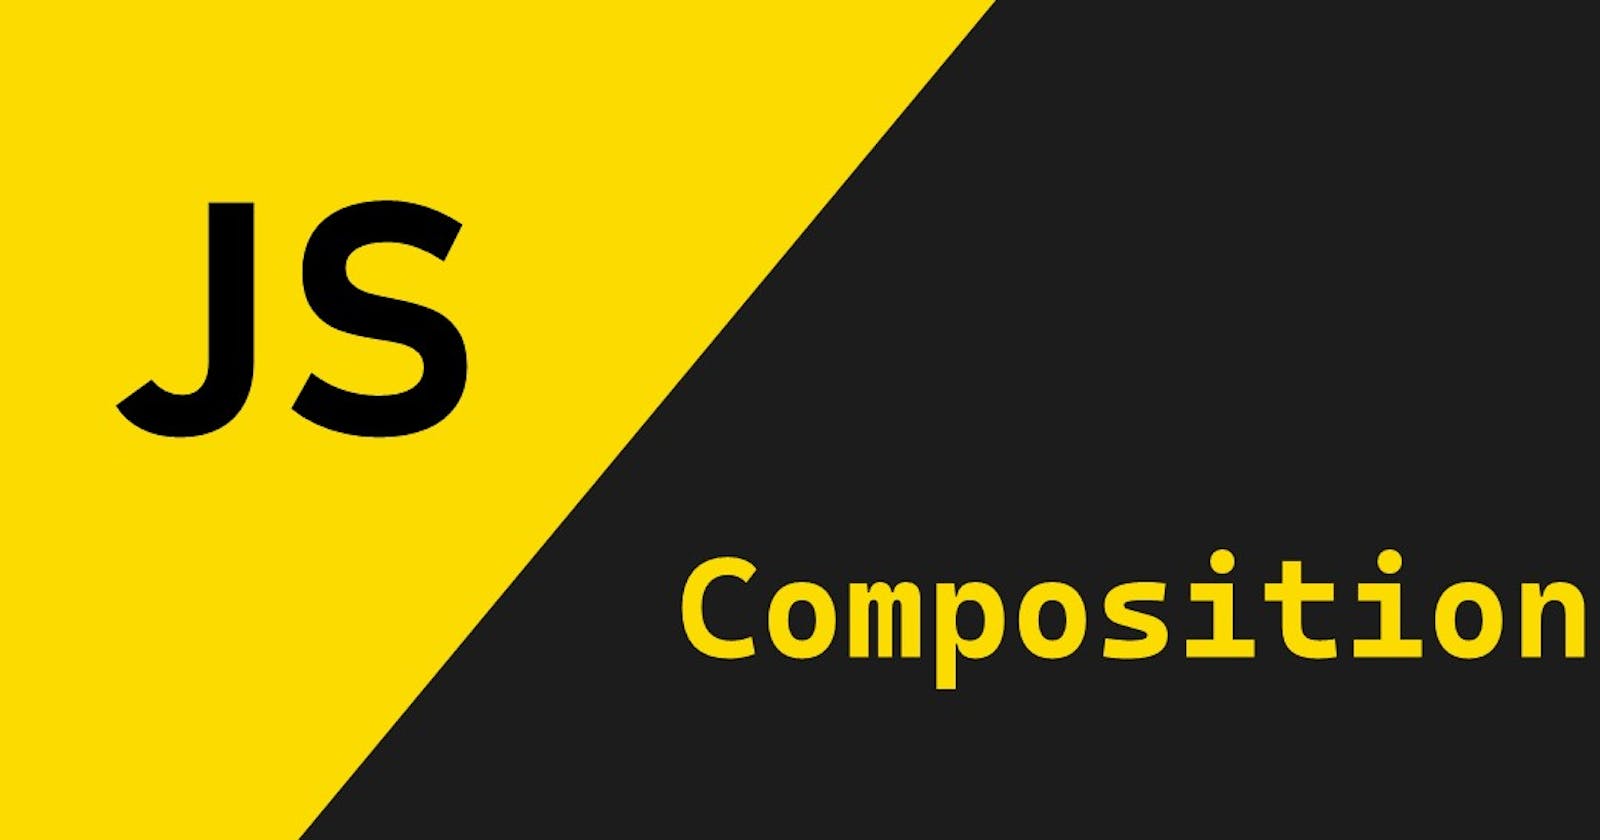 Understanding Composition in JavaScript